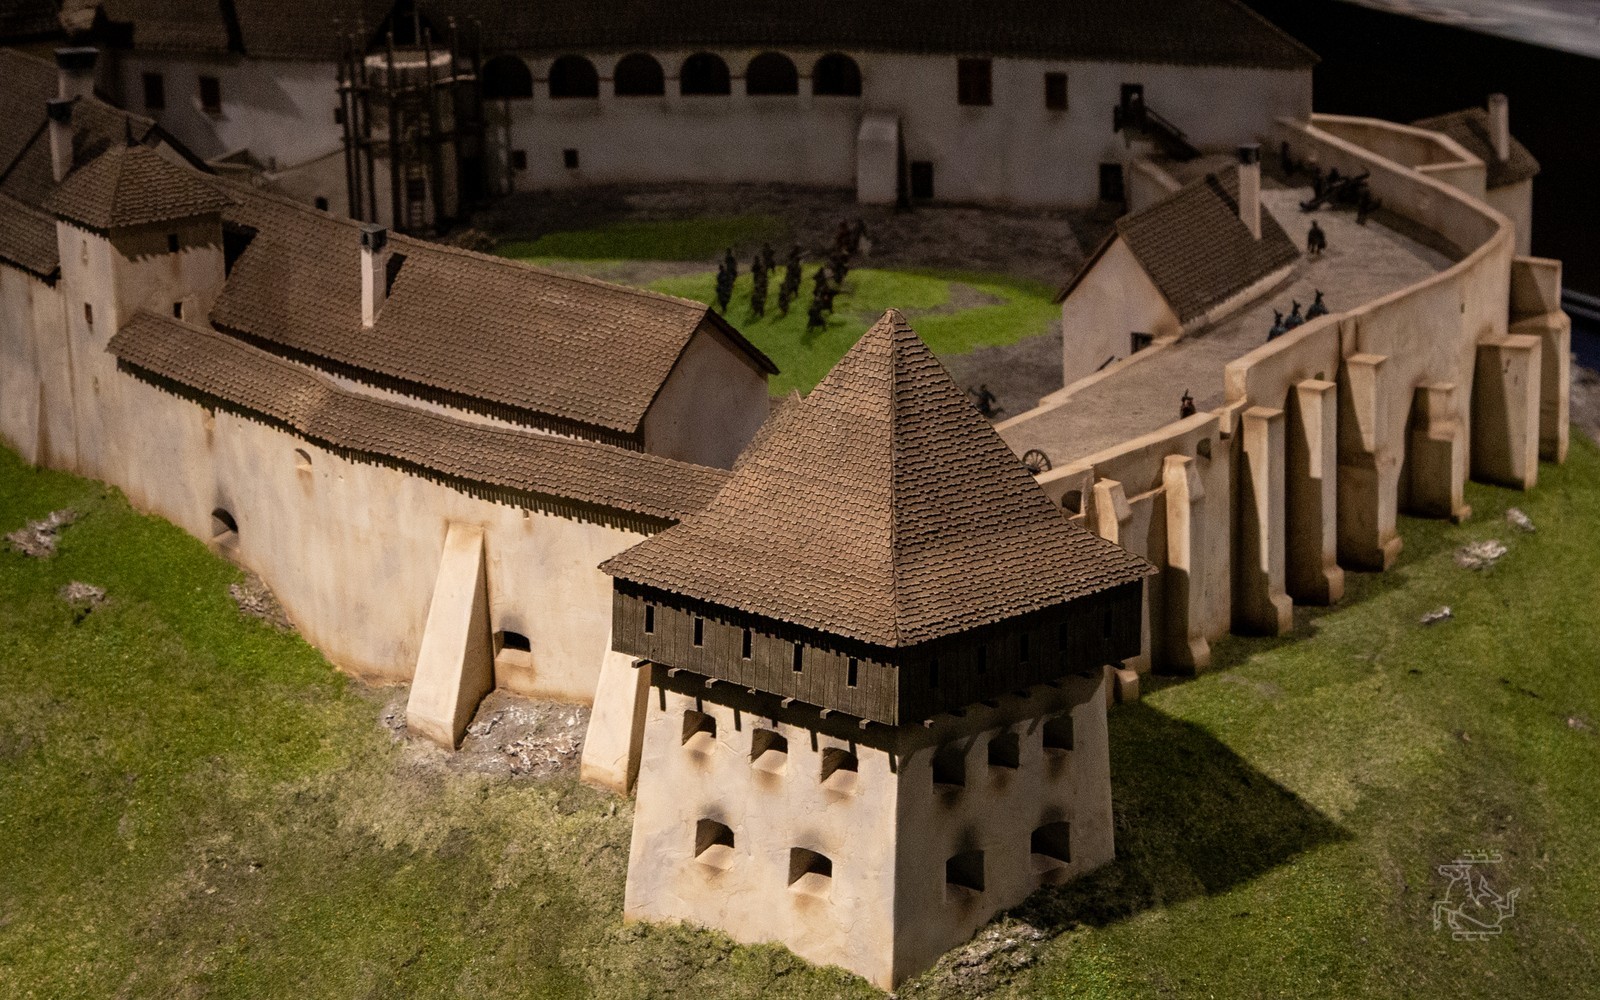 Sümegi castle, model